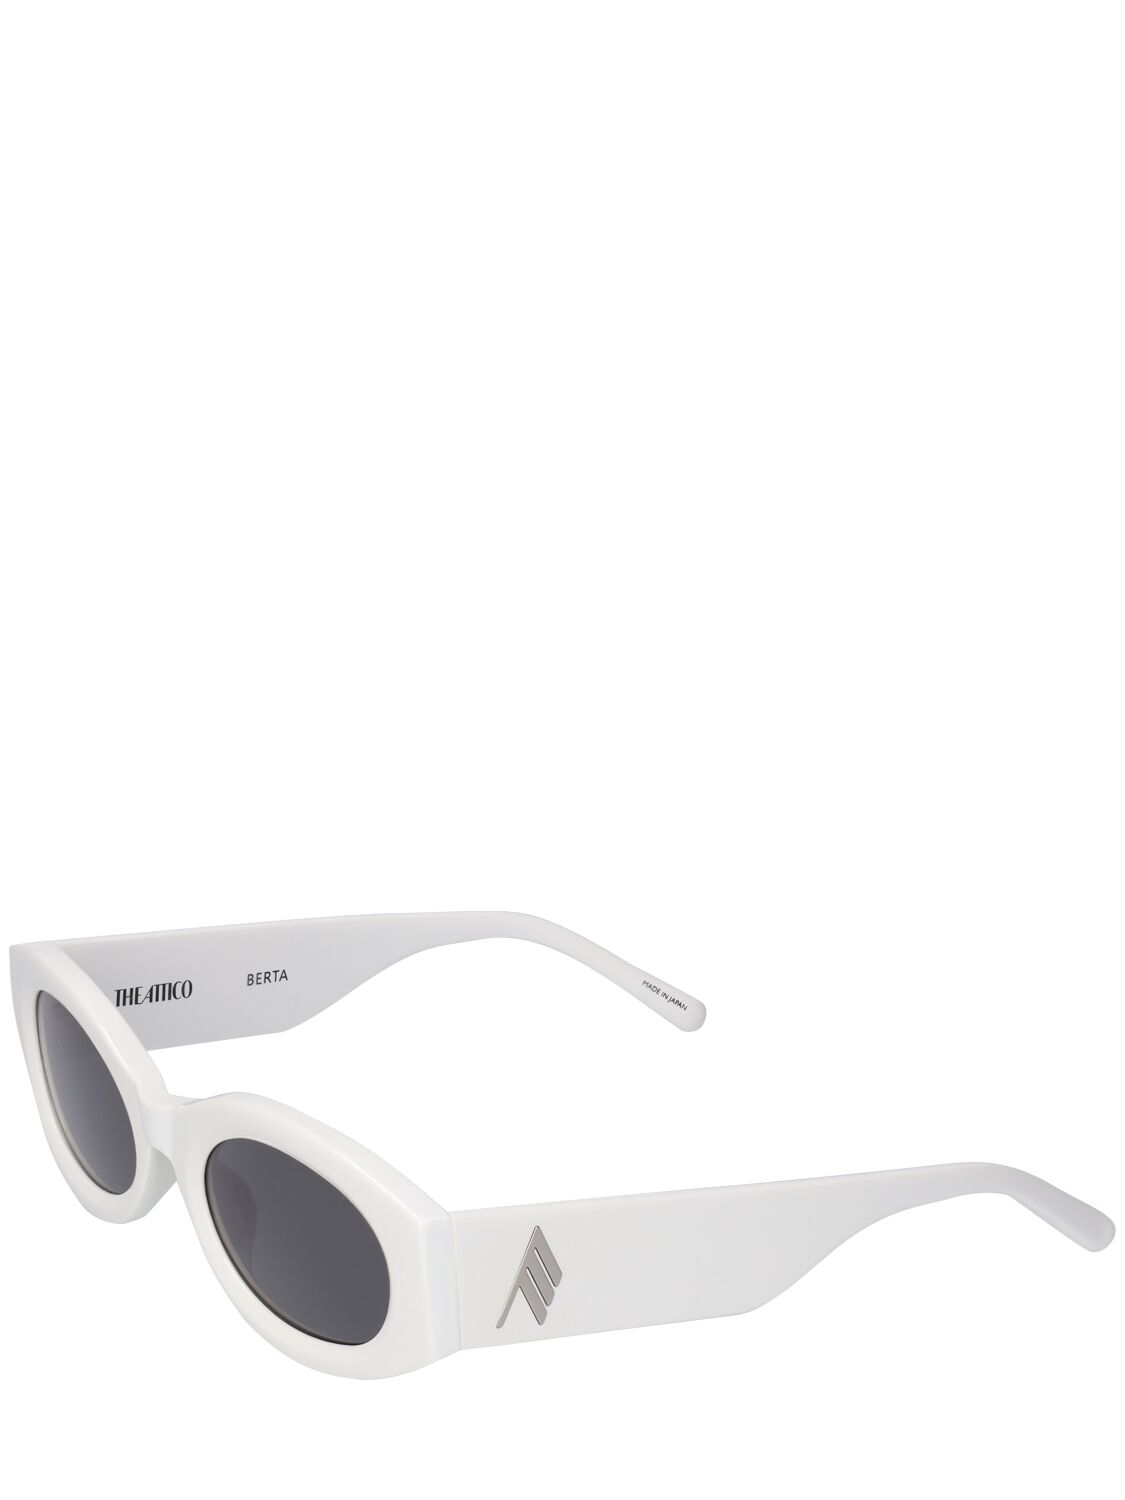 Shop Attico Berta Oval Acetate Sunglasses In White,grey